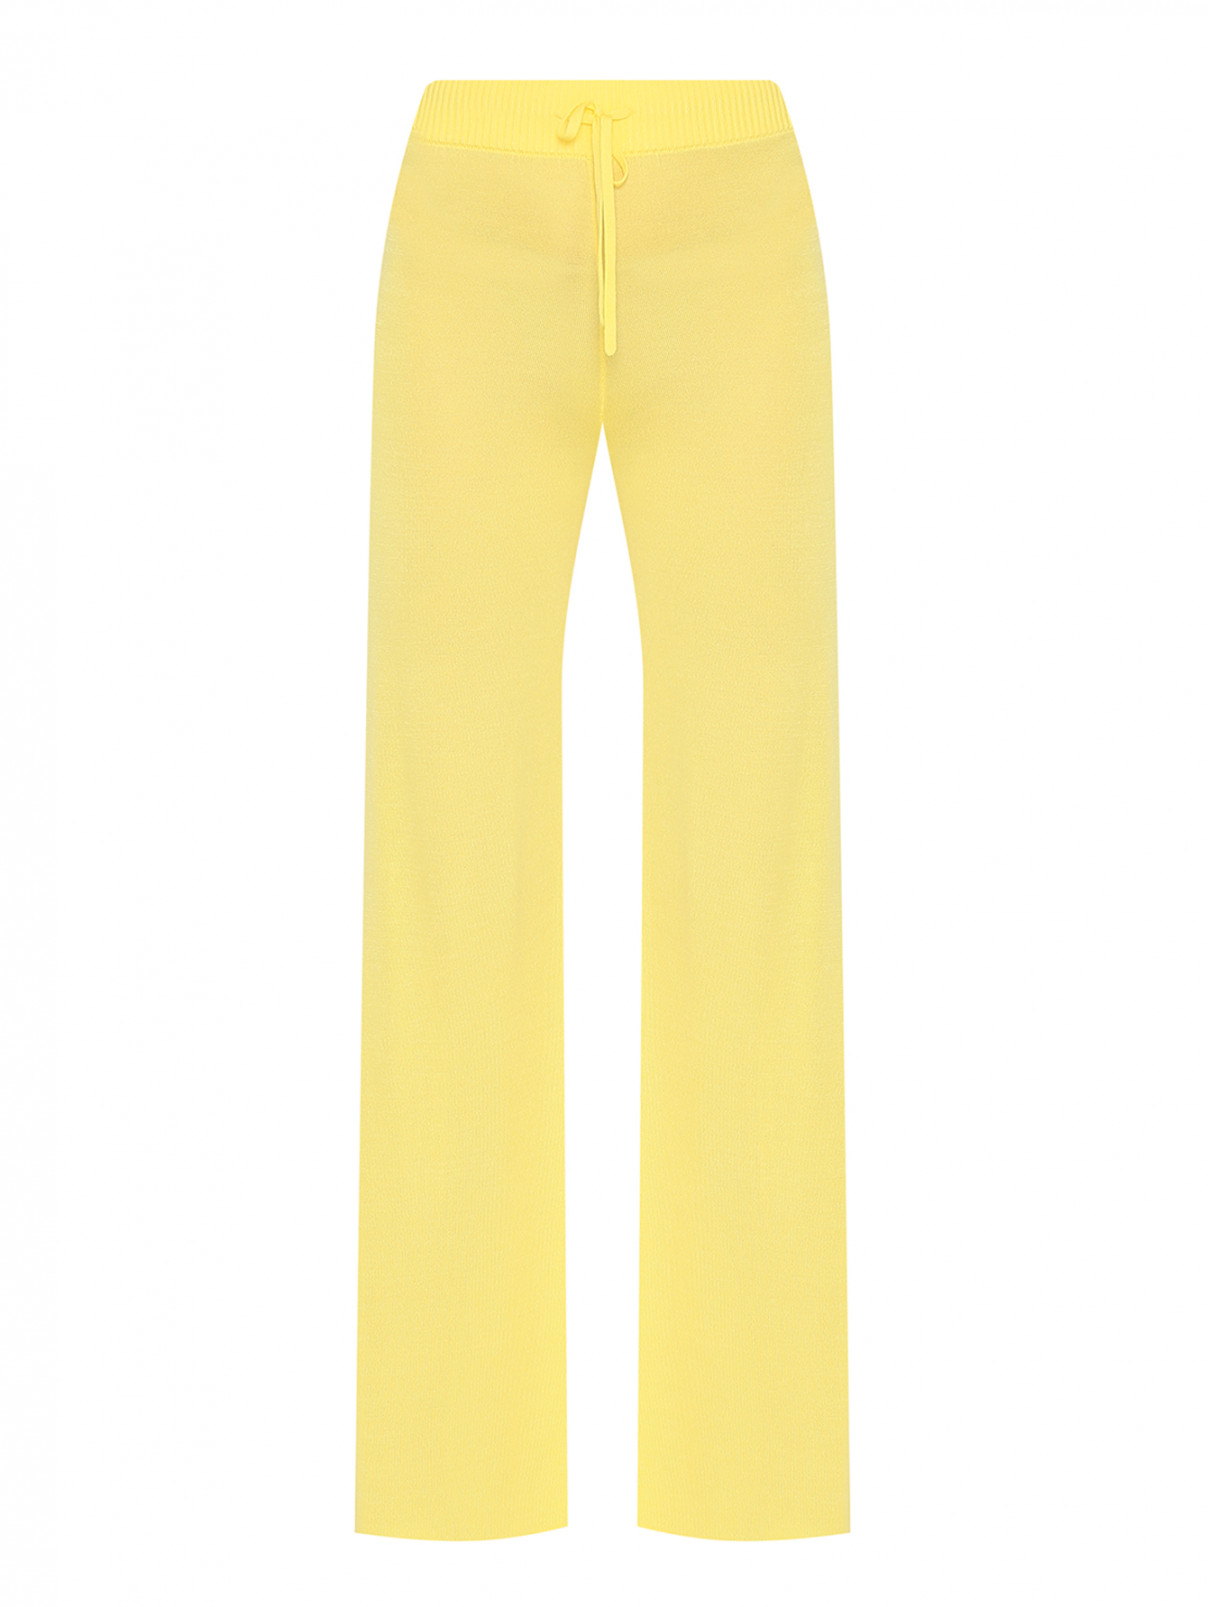 Однотонные брюки на резинке DEHA  –  Общий вид  – Цвет:  Желтый